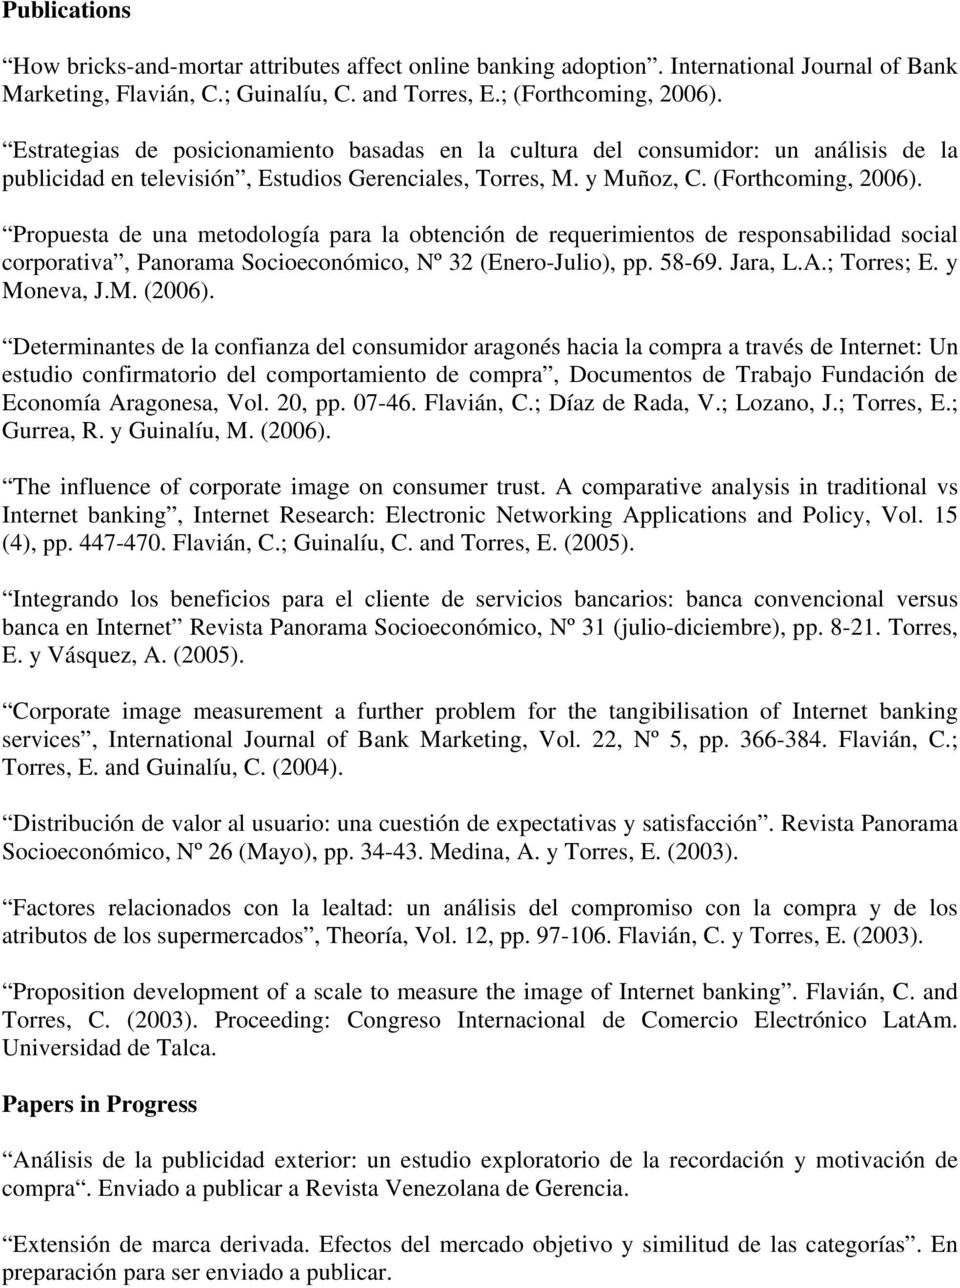 Propuesta de una metodología para la obtención de requerimientos de responsabilidad social corporativa, Panorama Socioeconómico, Nº 32 (Enero-Julio), pp. 58-69. Jara, L.A.; Torres; E. y Moneva, J.M. (2006).